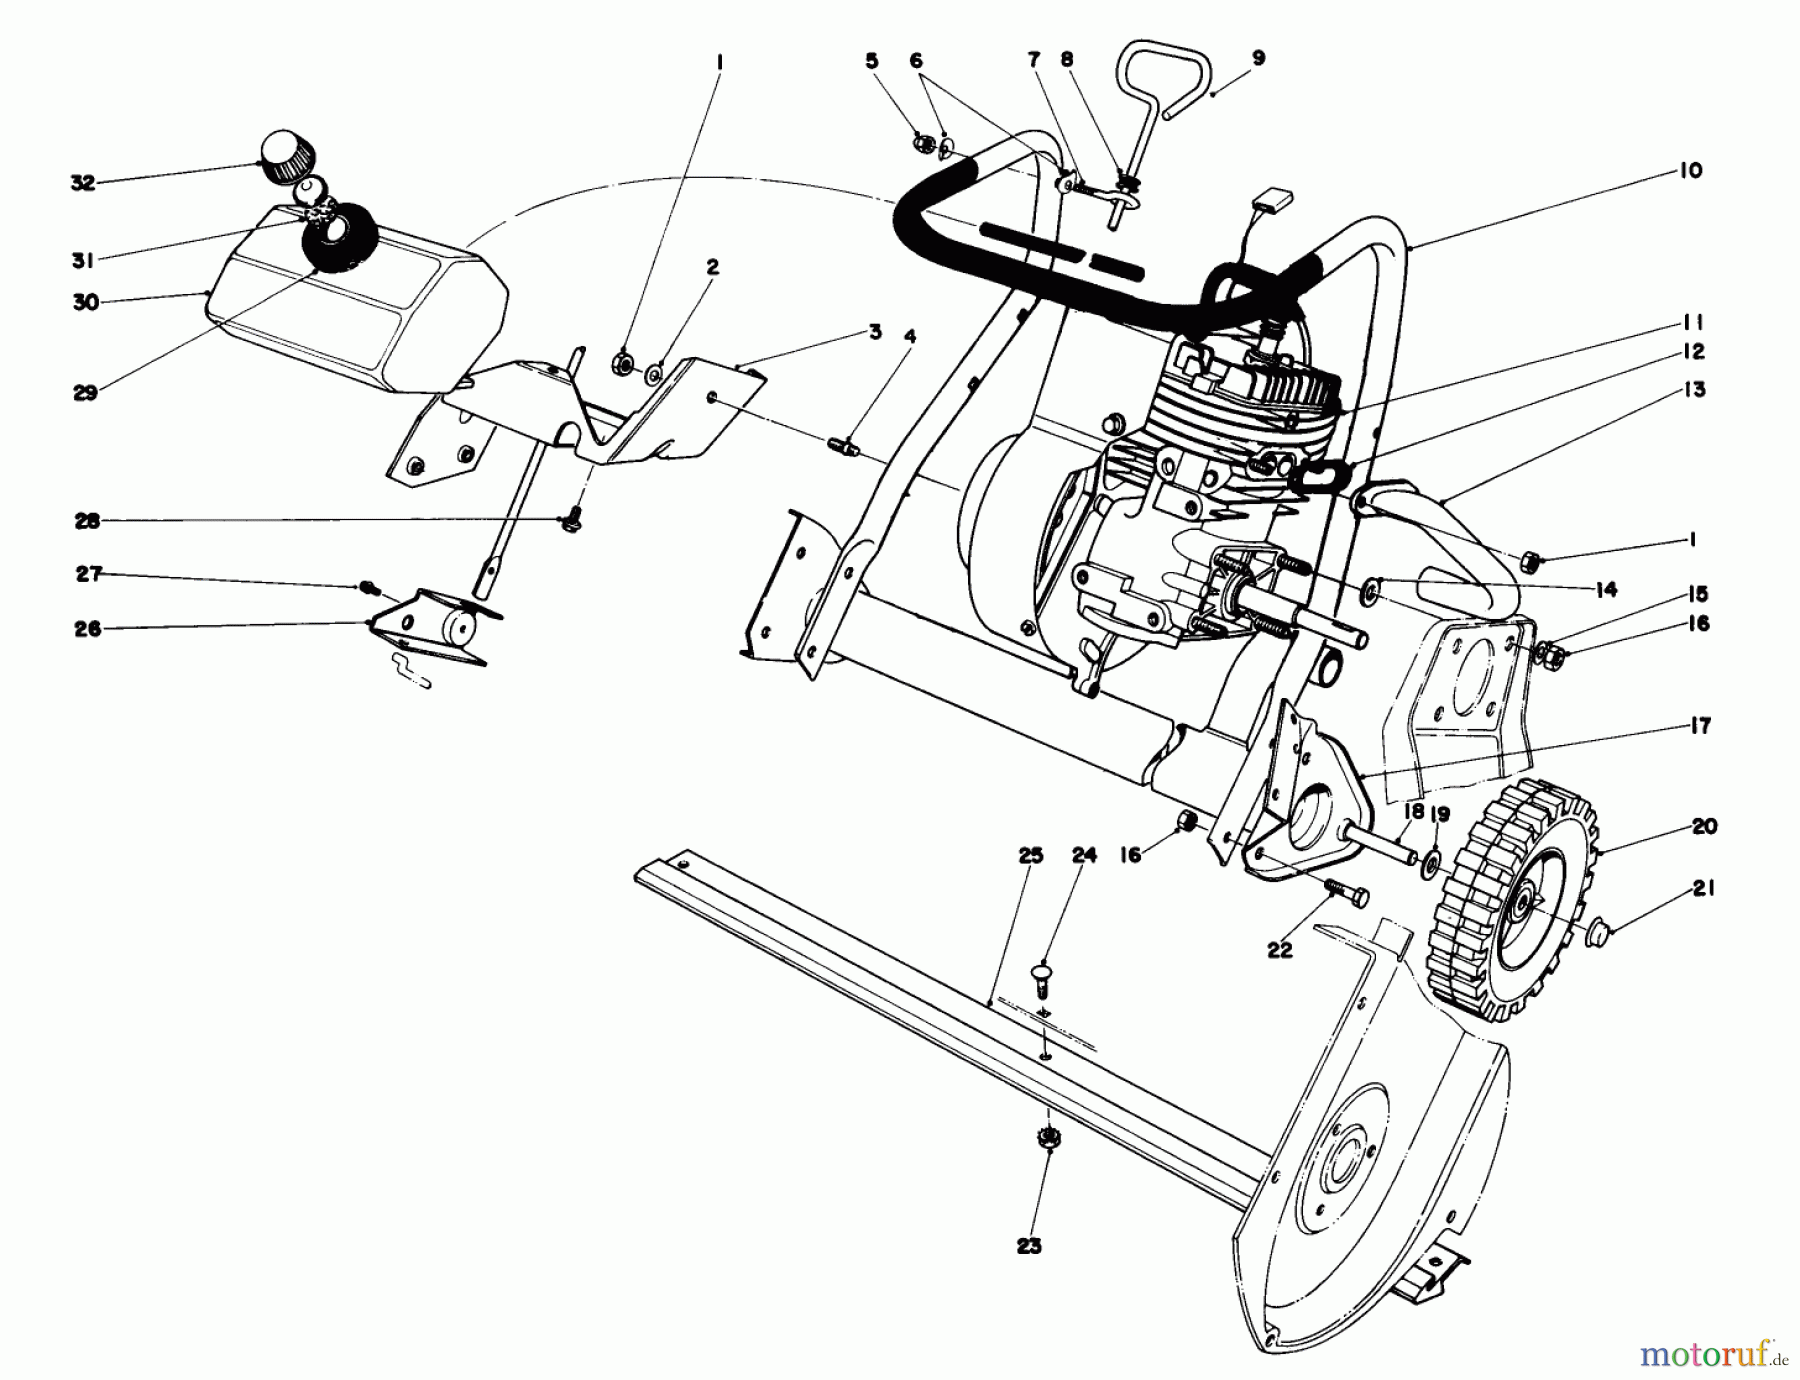  Toro Neu Snow Blowers/Snow Throwers Seite 1 38232 (S-200) - Toro S-200 Snowthrower, 1985 (5000001-5999999) ENGINE ASSEMBLY